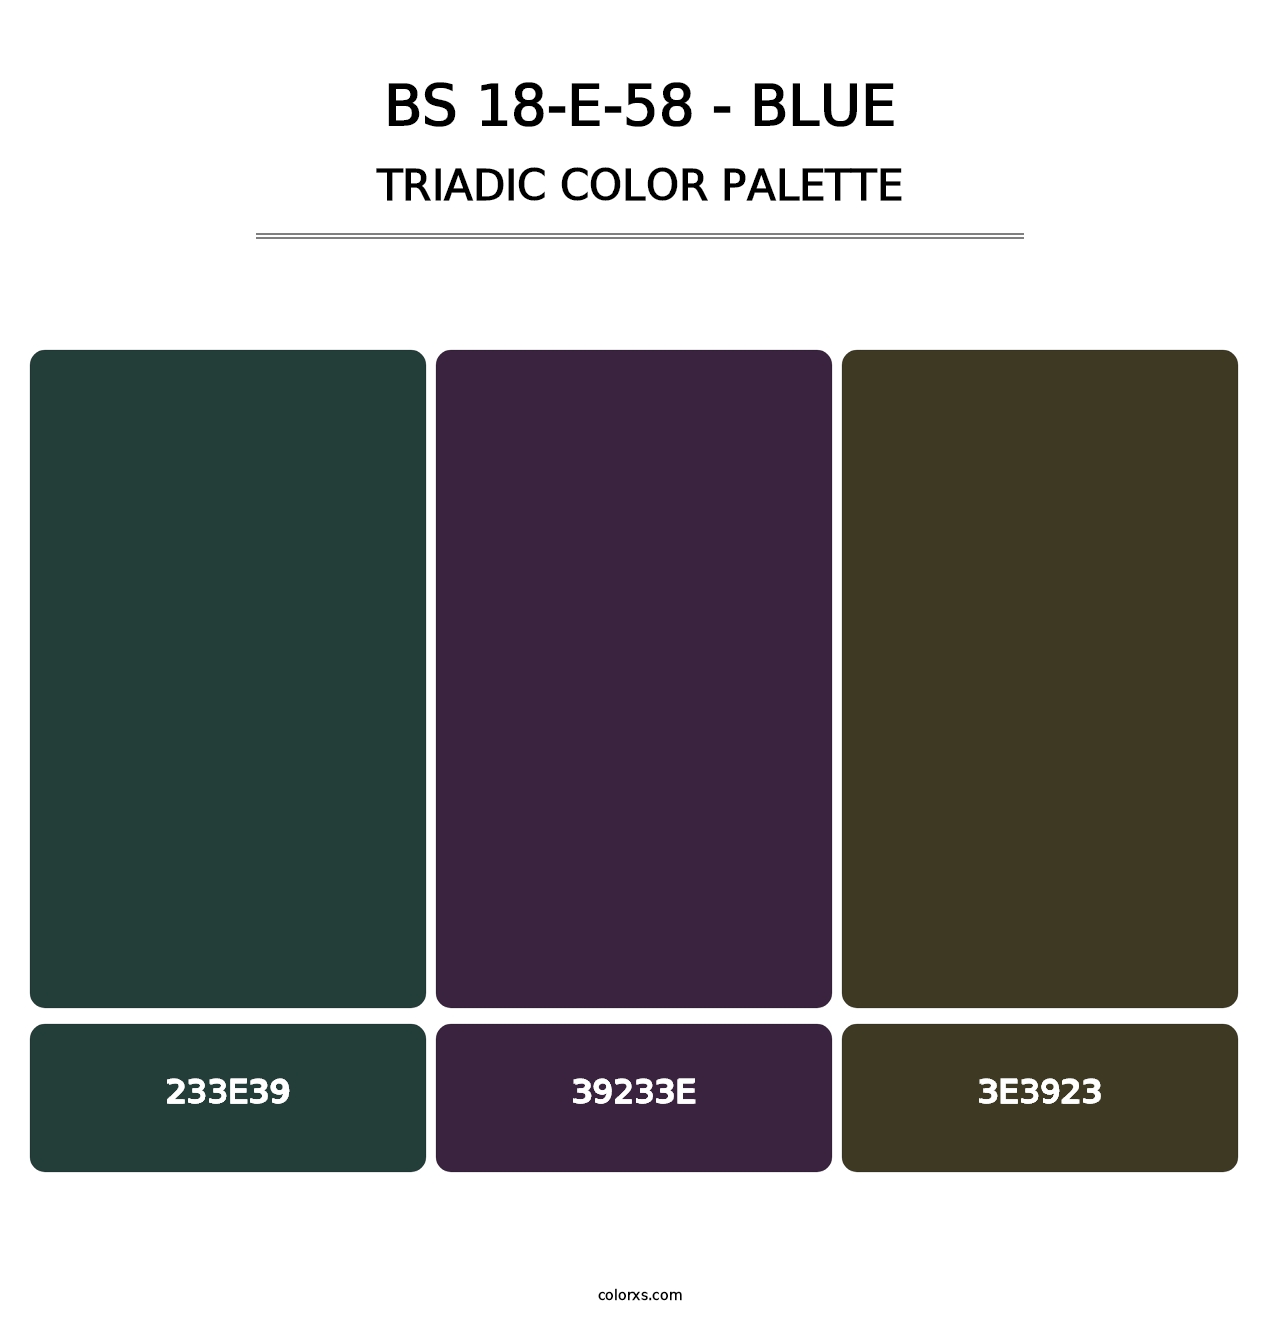 BS 18-E-58 - Blue - Triadic Color Palette